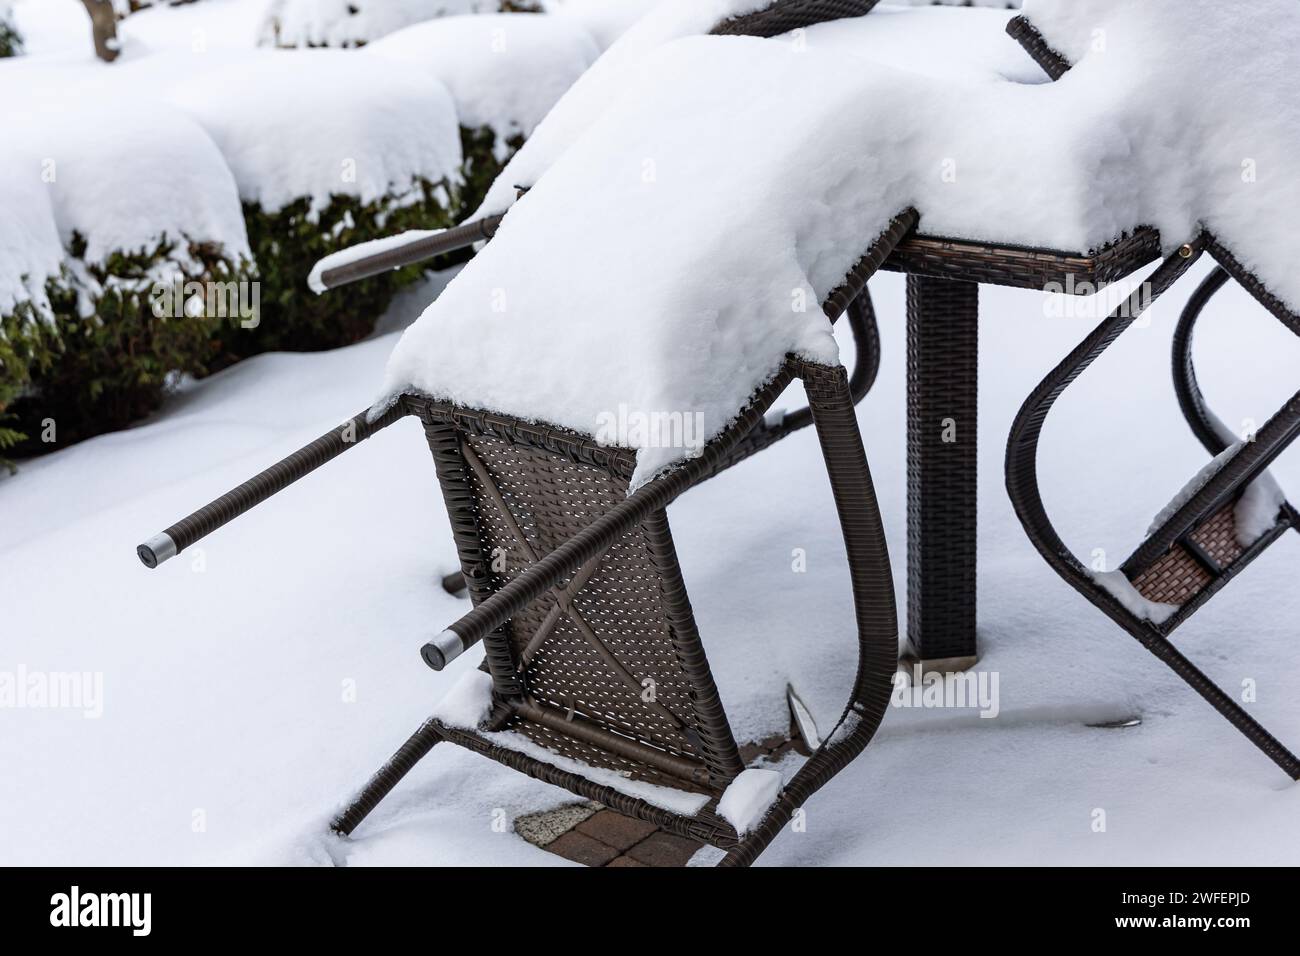 Chaises en plastique et une table de jardin recouverte d'une épaisse couche de neige. Meubles de jardin non protégés pour l'hiver. Banque D'Images